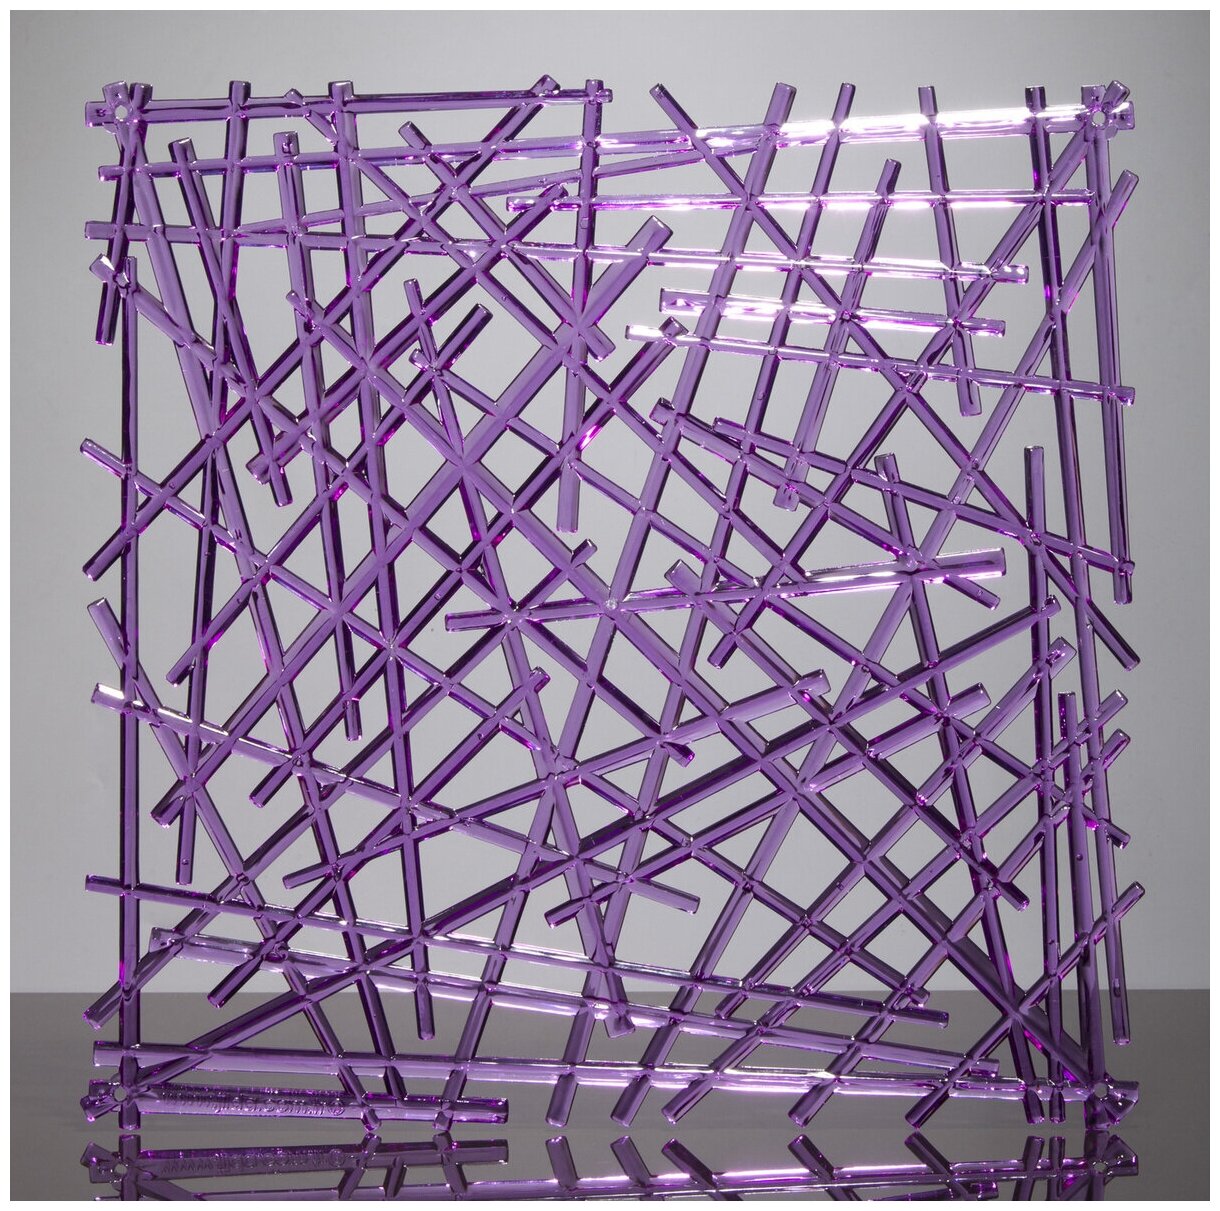 Комплект декоративных панелей из 4 шт. Jilda, коллекция "Хворост", 29х29 см, материал полистирол, цвет - фиолетовый